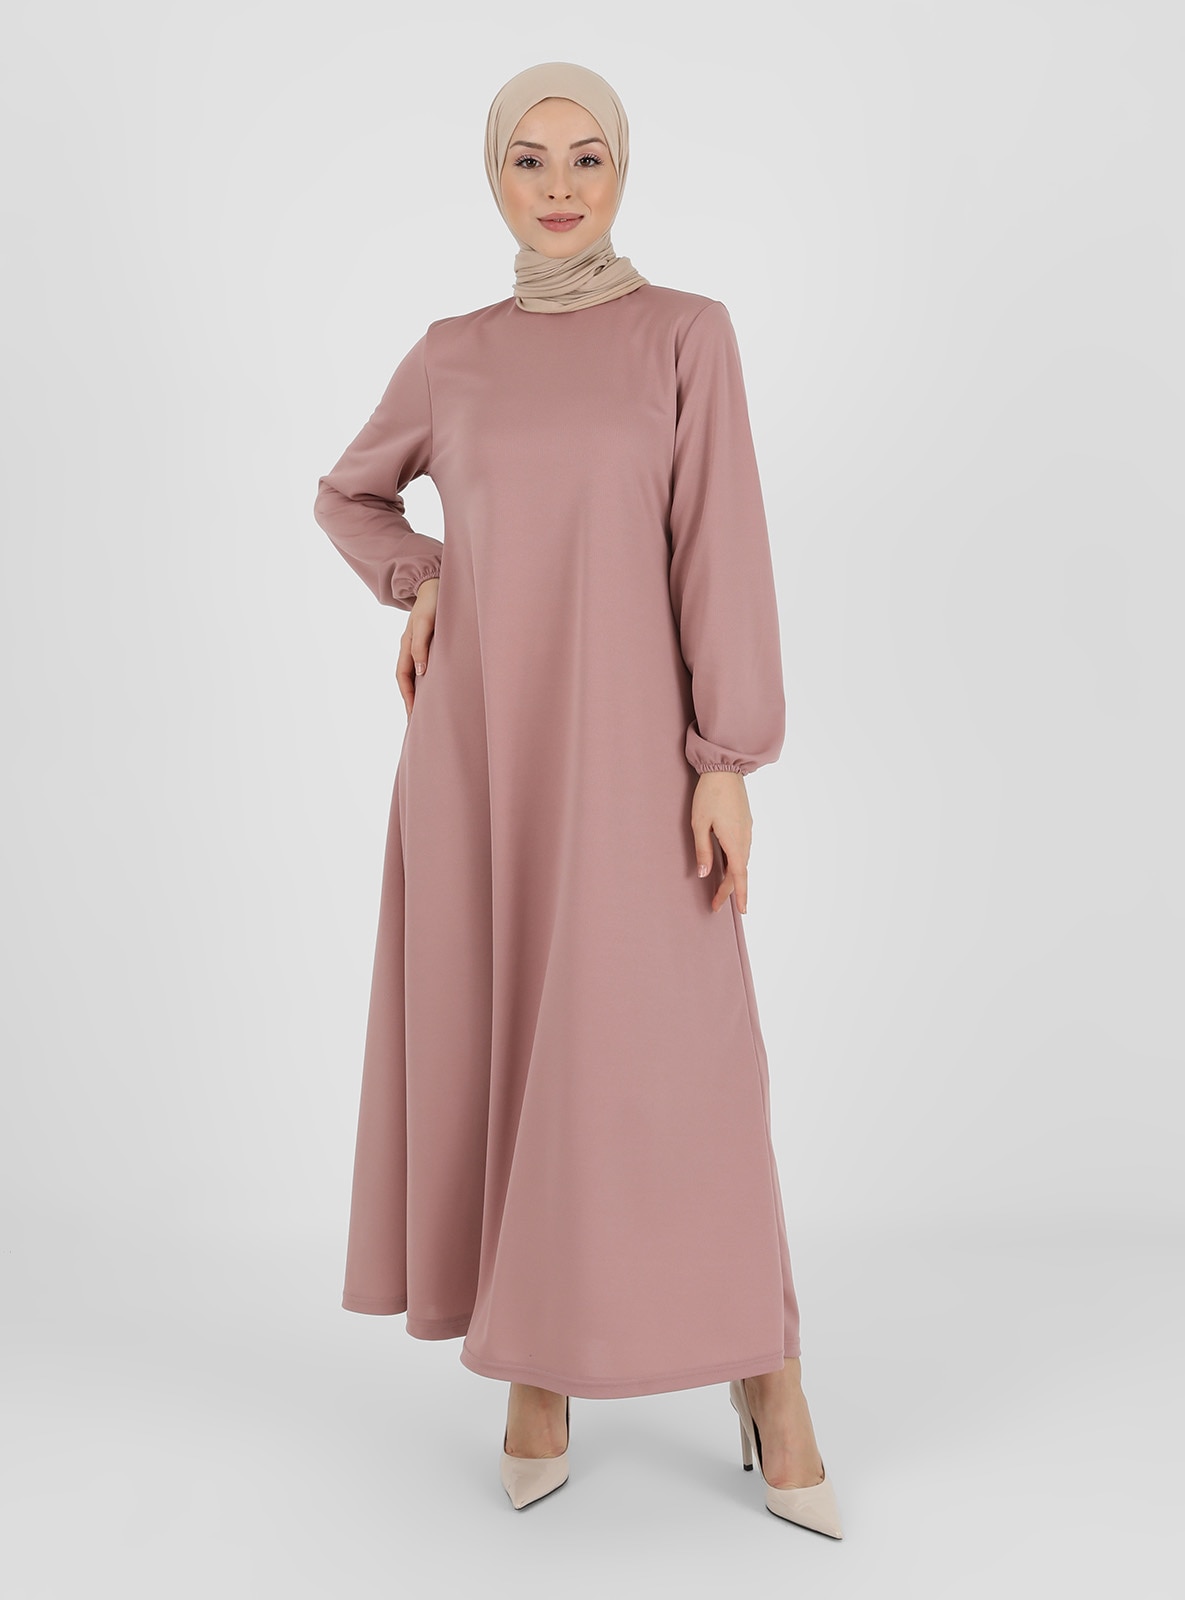 Plain Modest Dress Rose Color